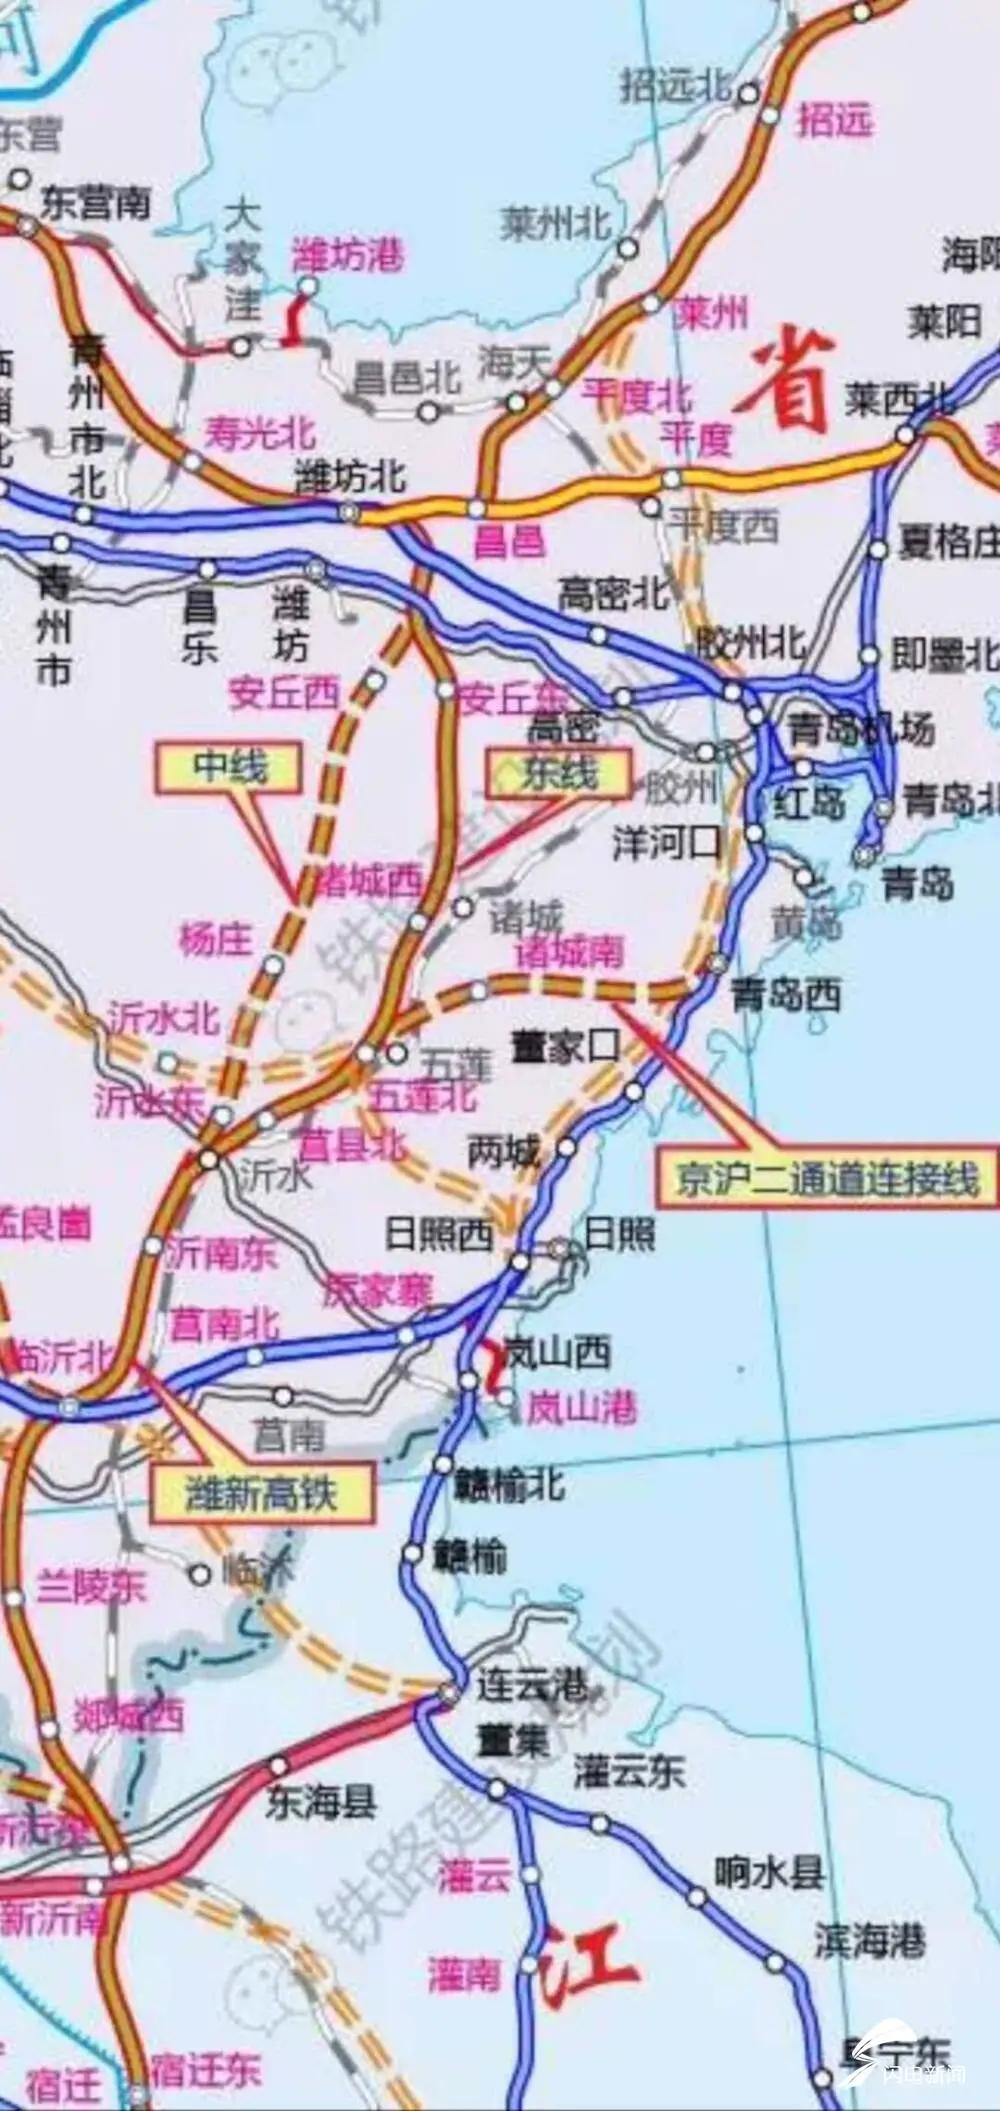 京沪高铁二通道定了!潍坊拟设潍坊北,安丘,诸城西车站!